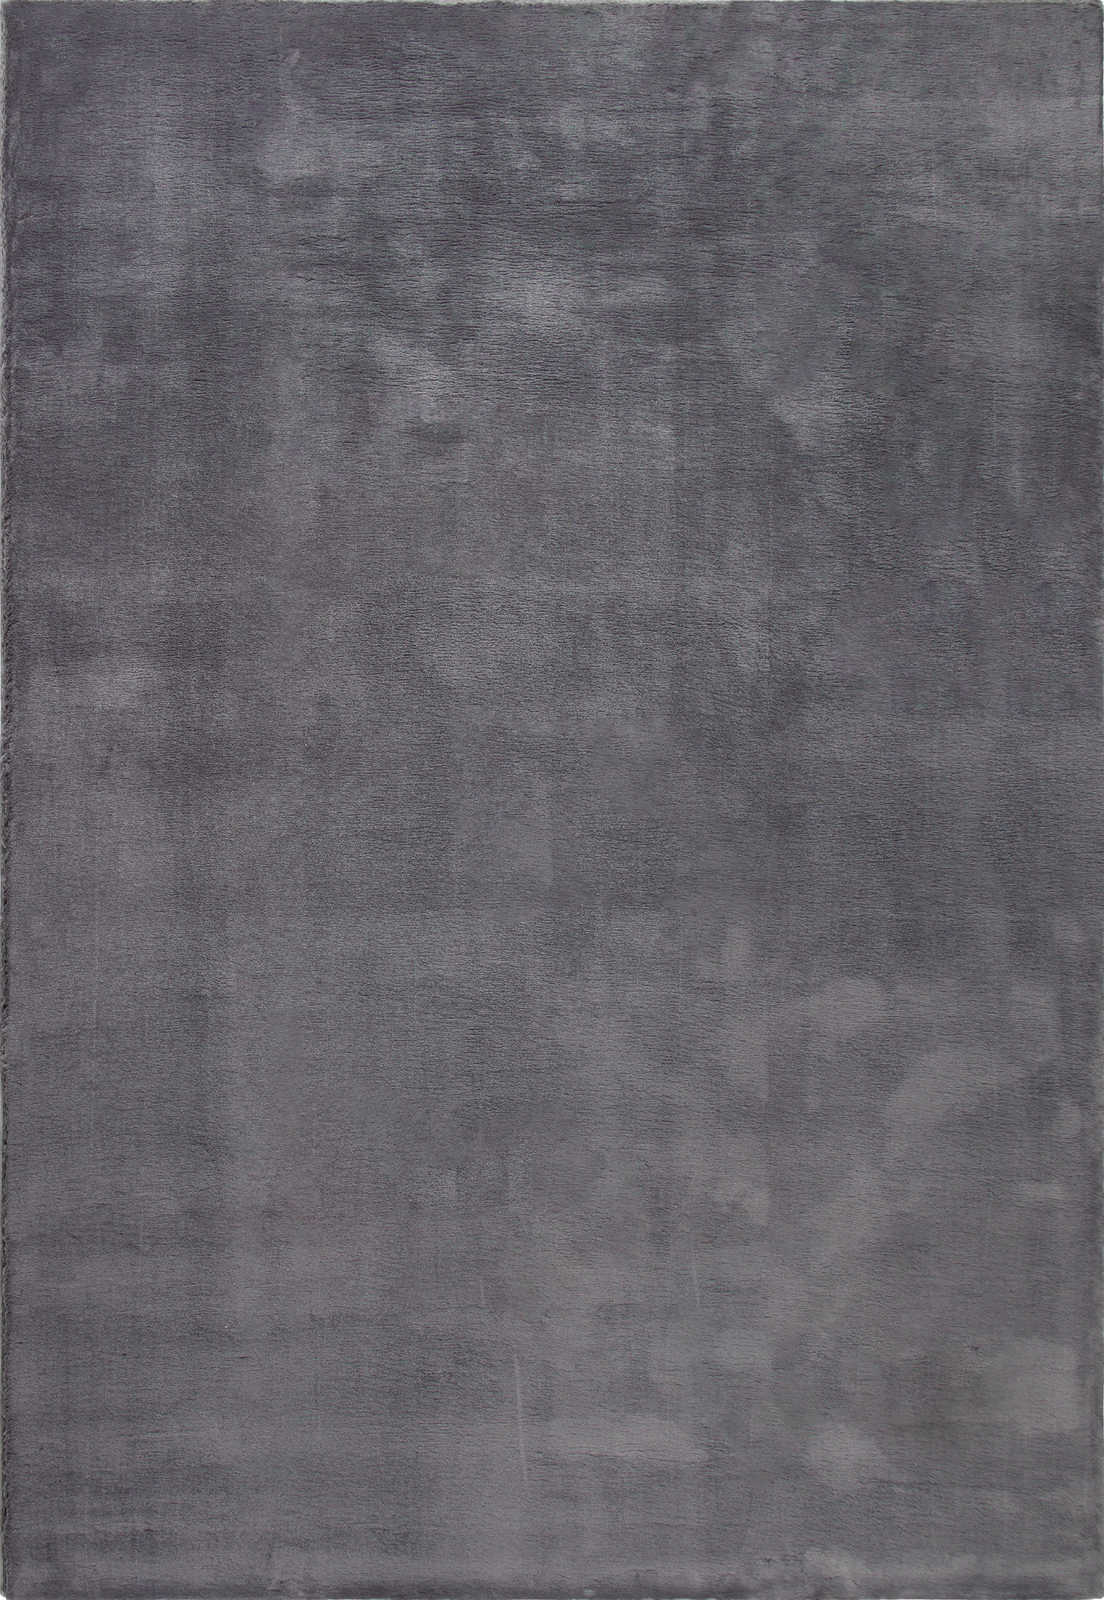             Moderner Hochflor Teppich in Anthrazit – 200 x 140 cm
        